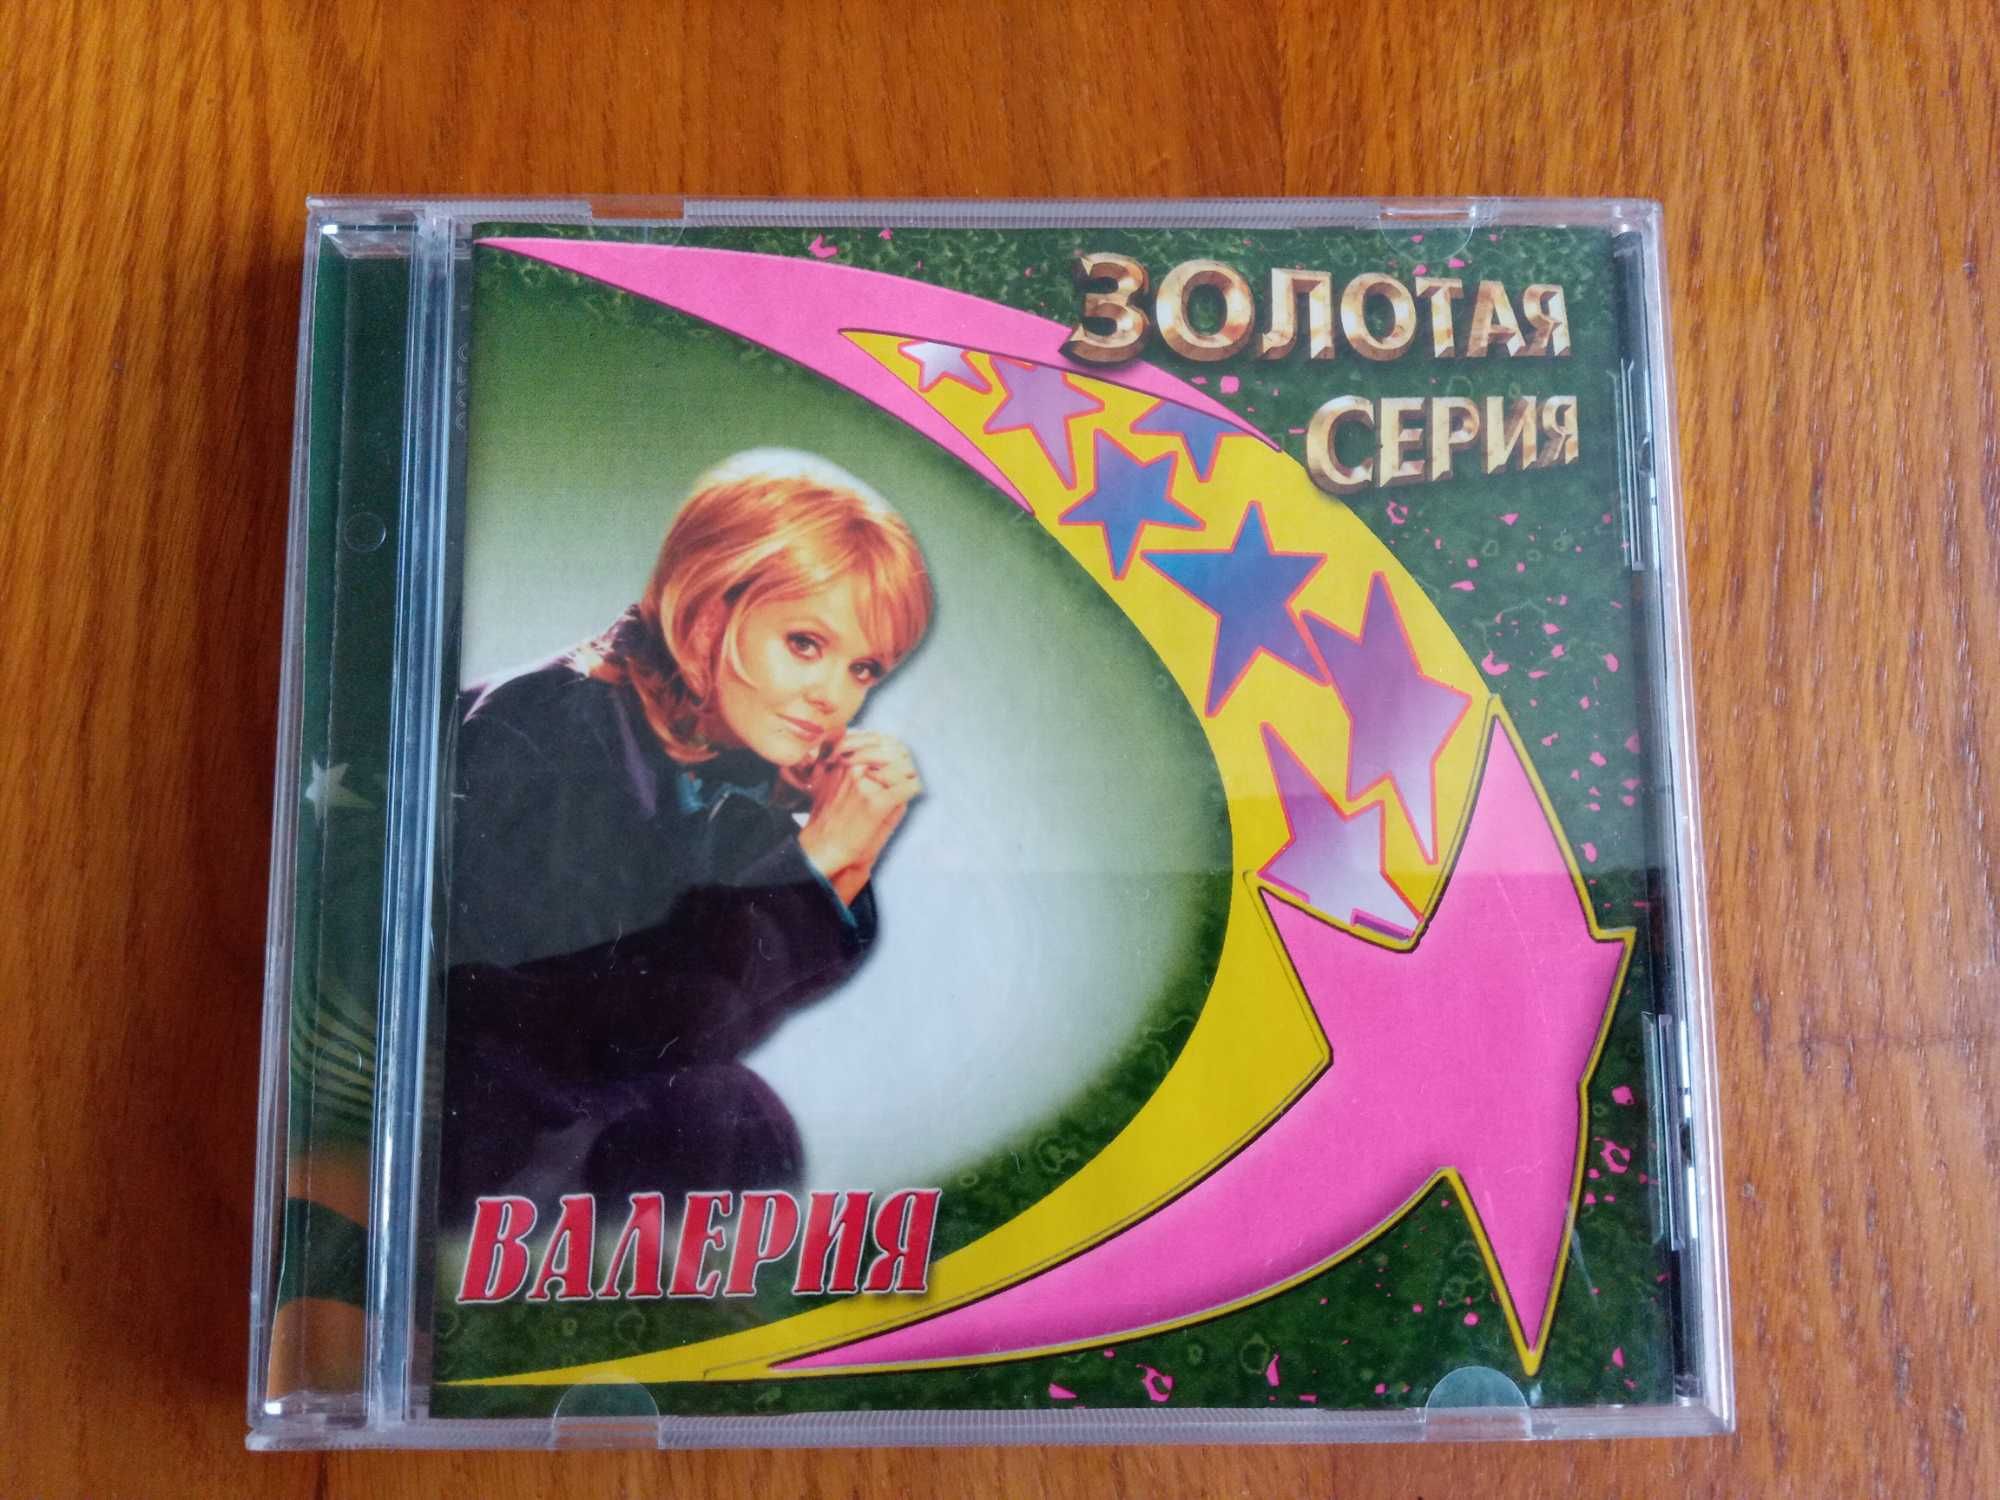 Золотая Серия фирменный CD диск сборник лучших песен ВАЛЕРИЯ